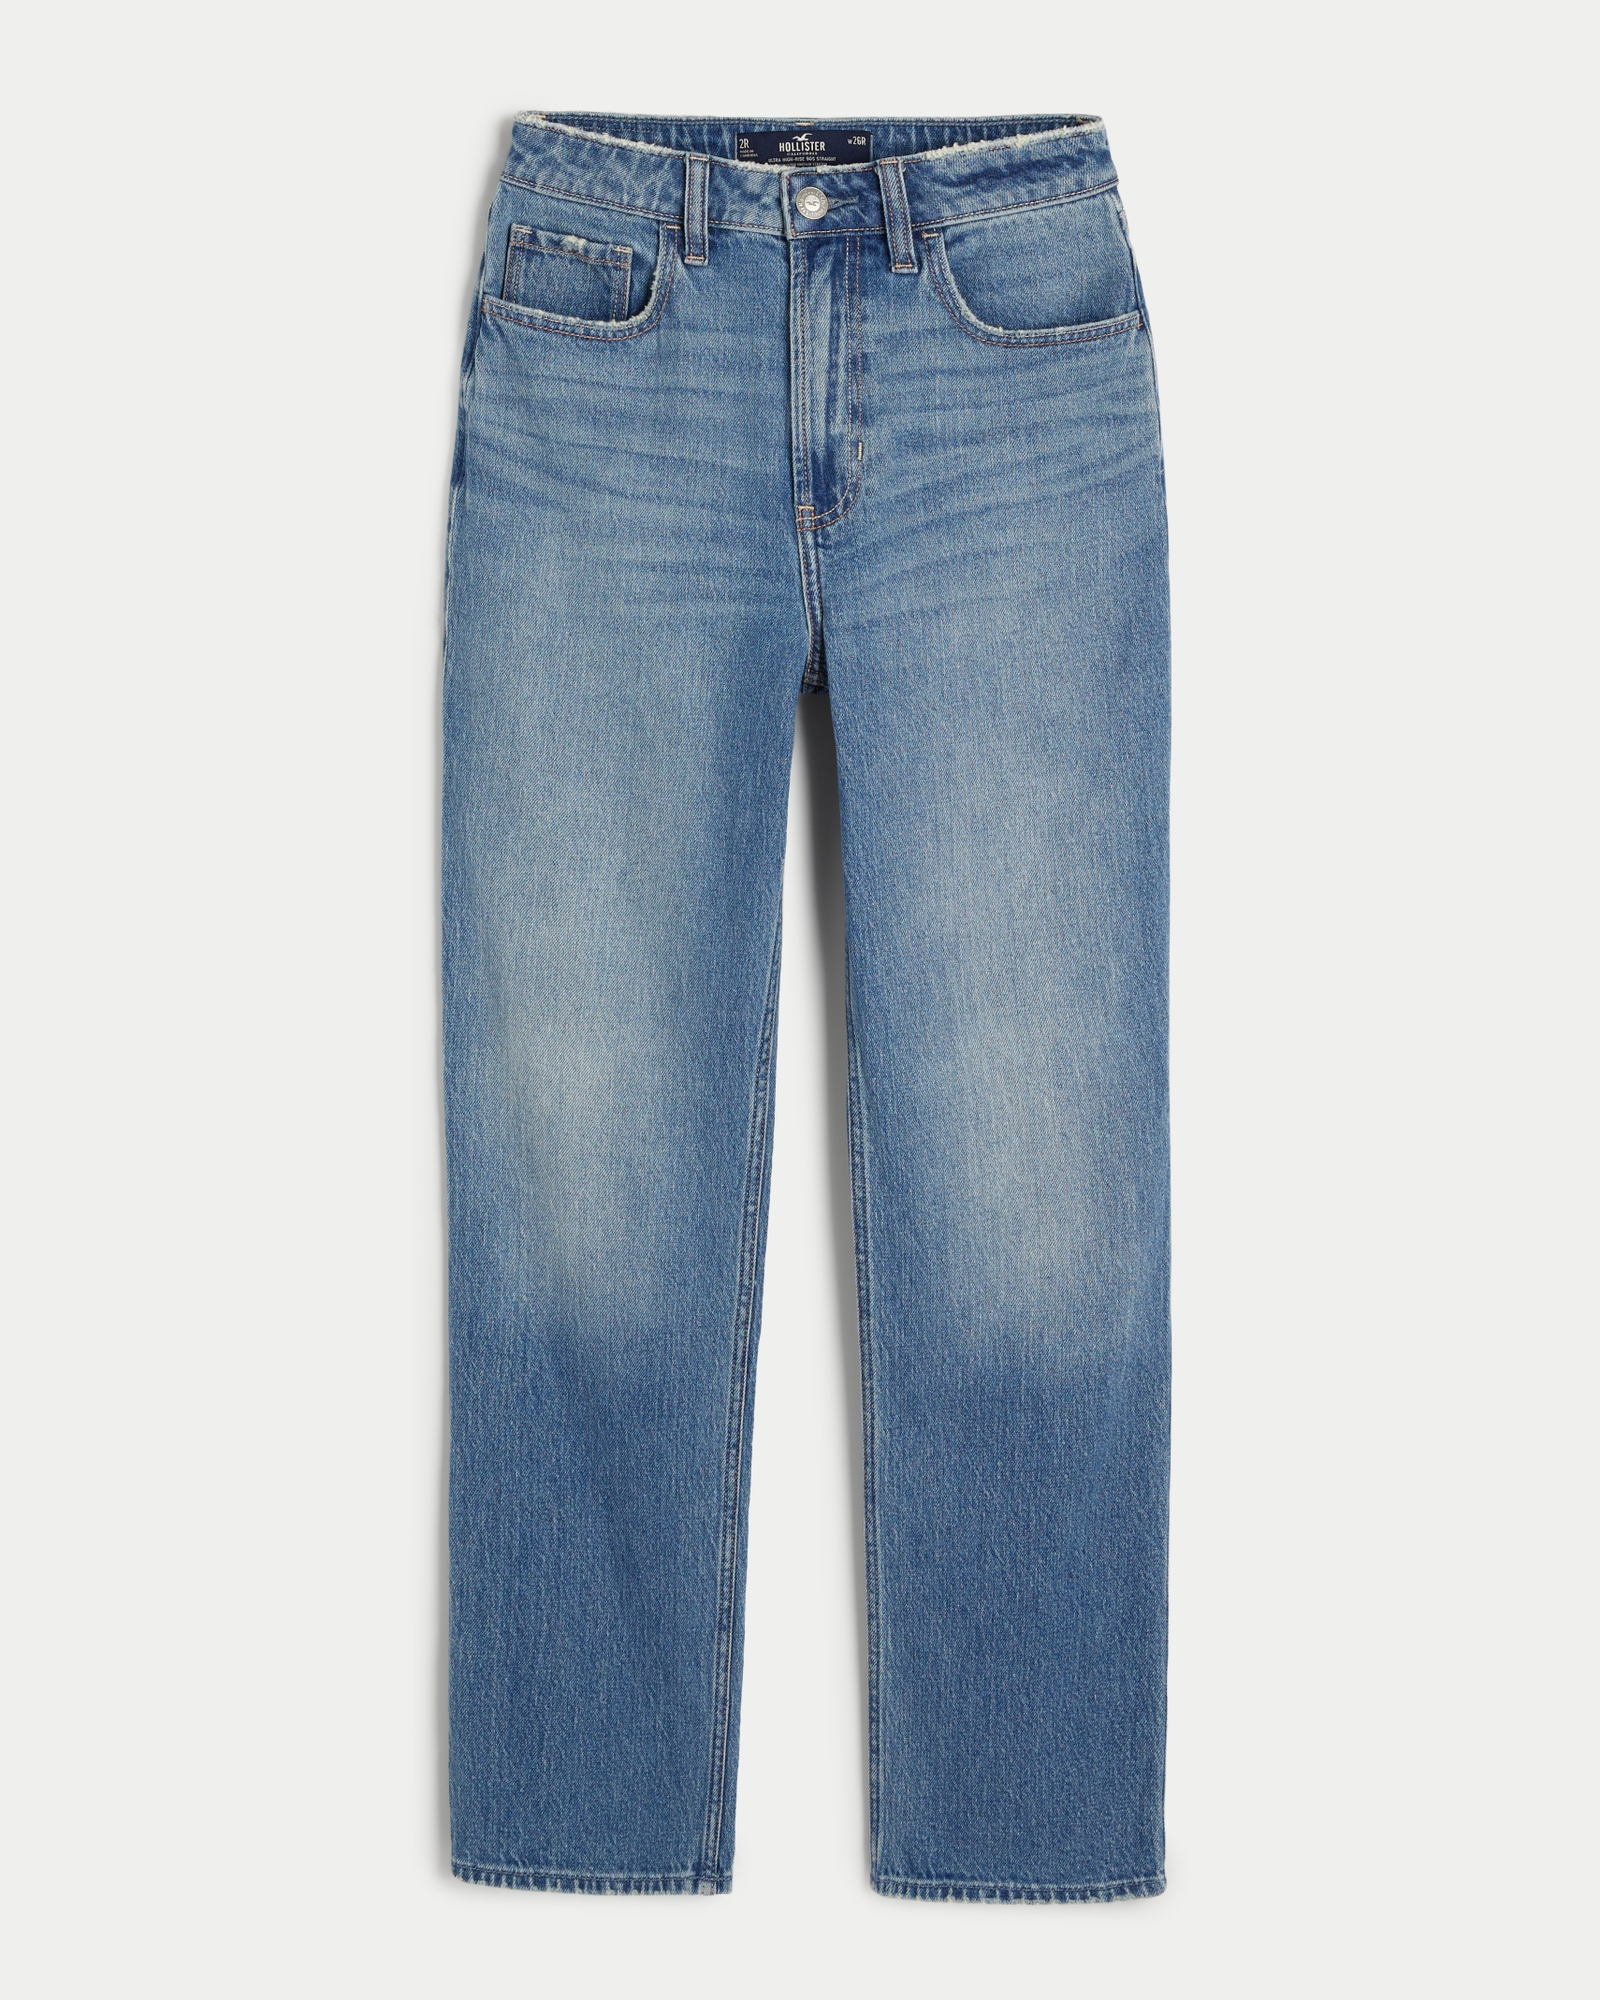 Hollister Women's Jeans W 25 in Blue 100% Cotton